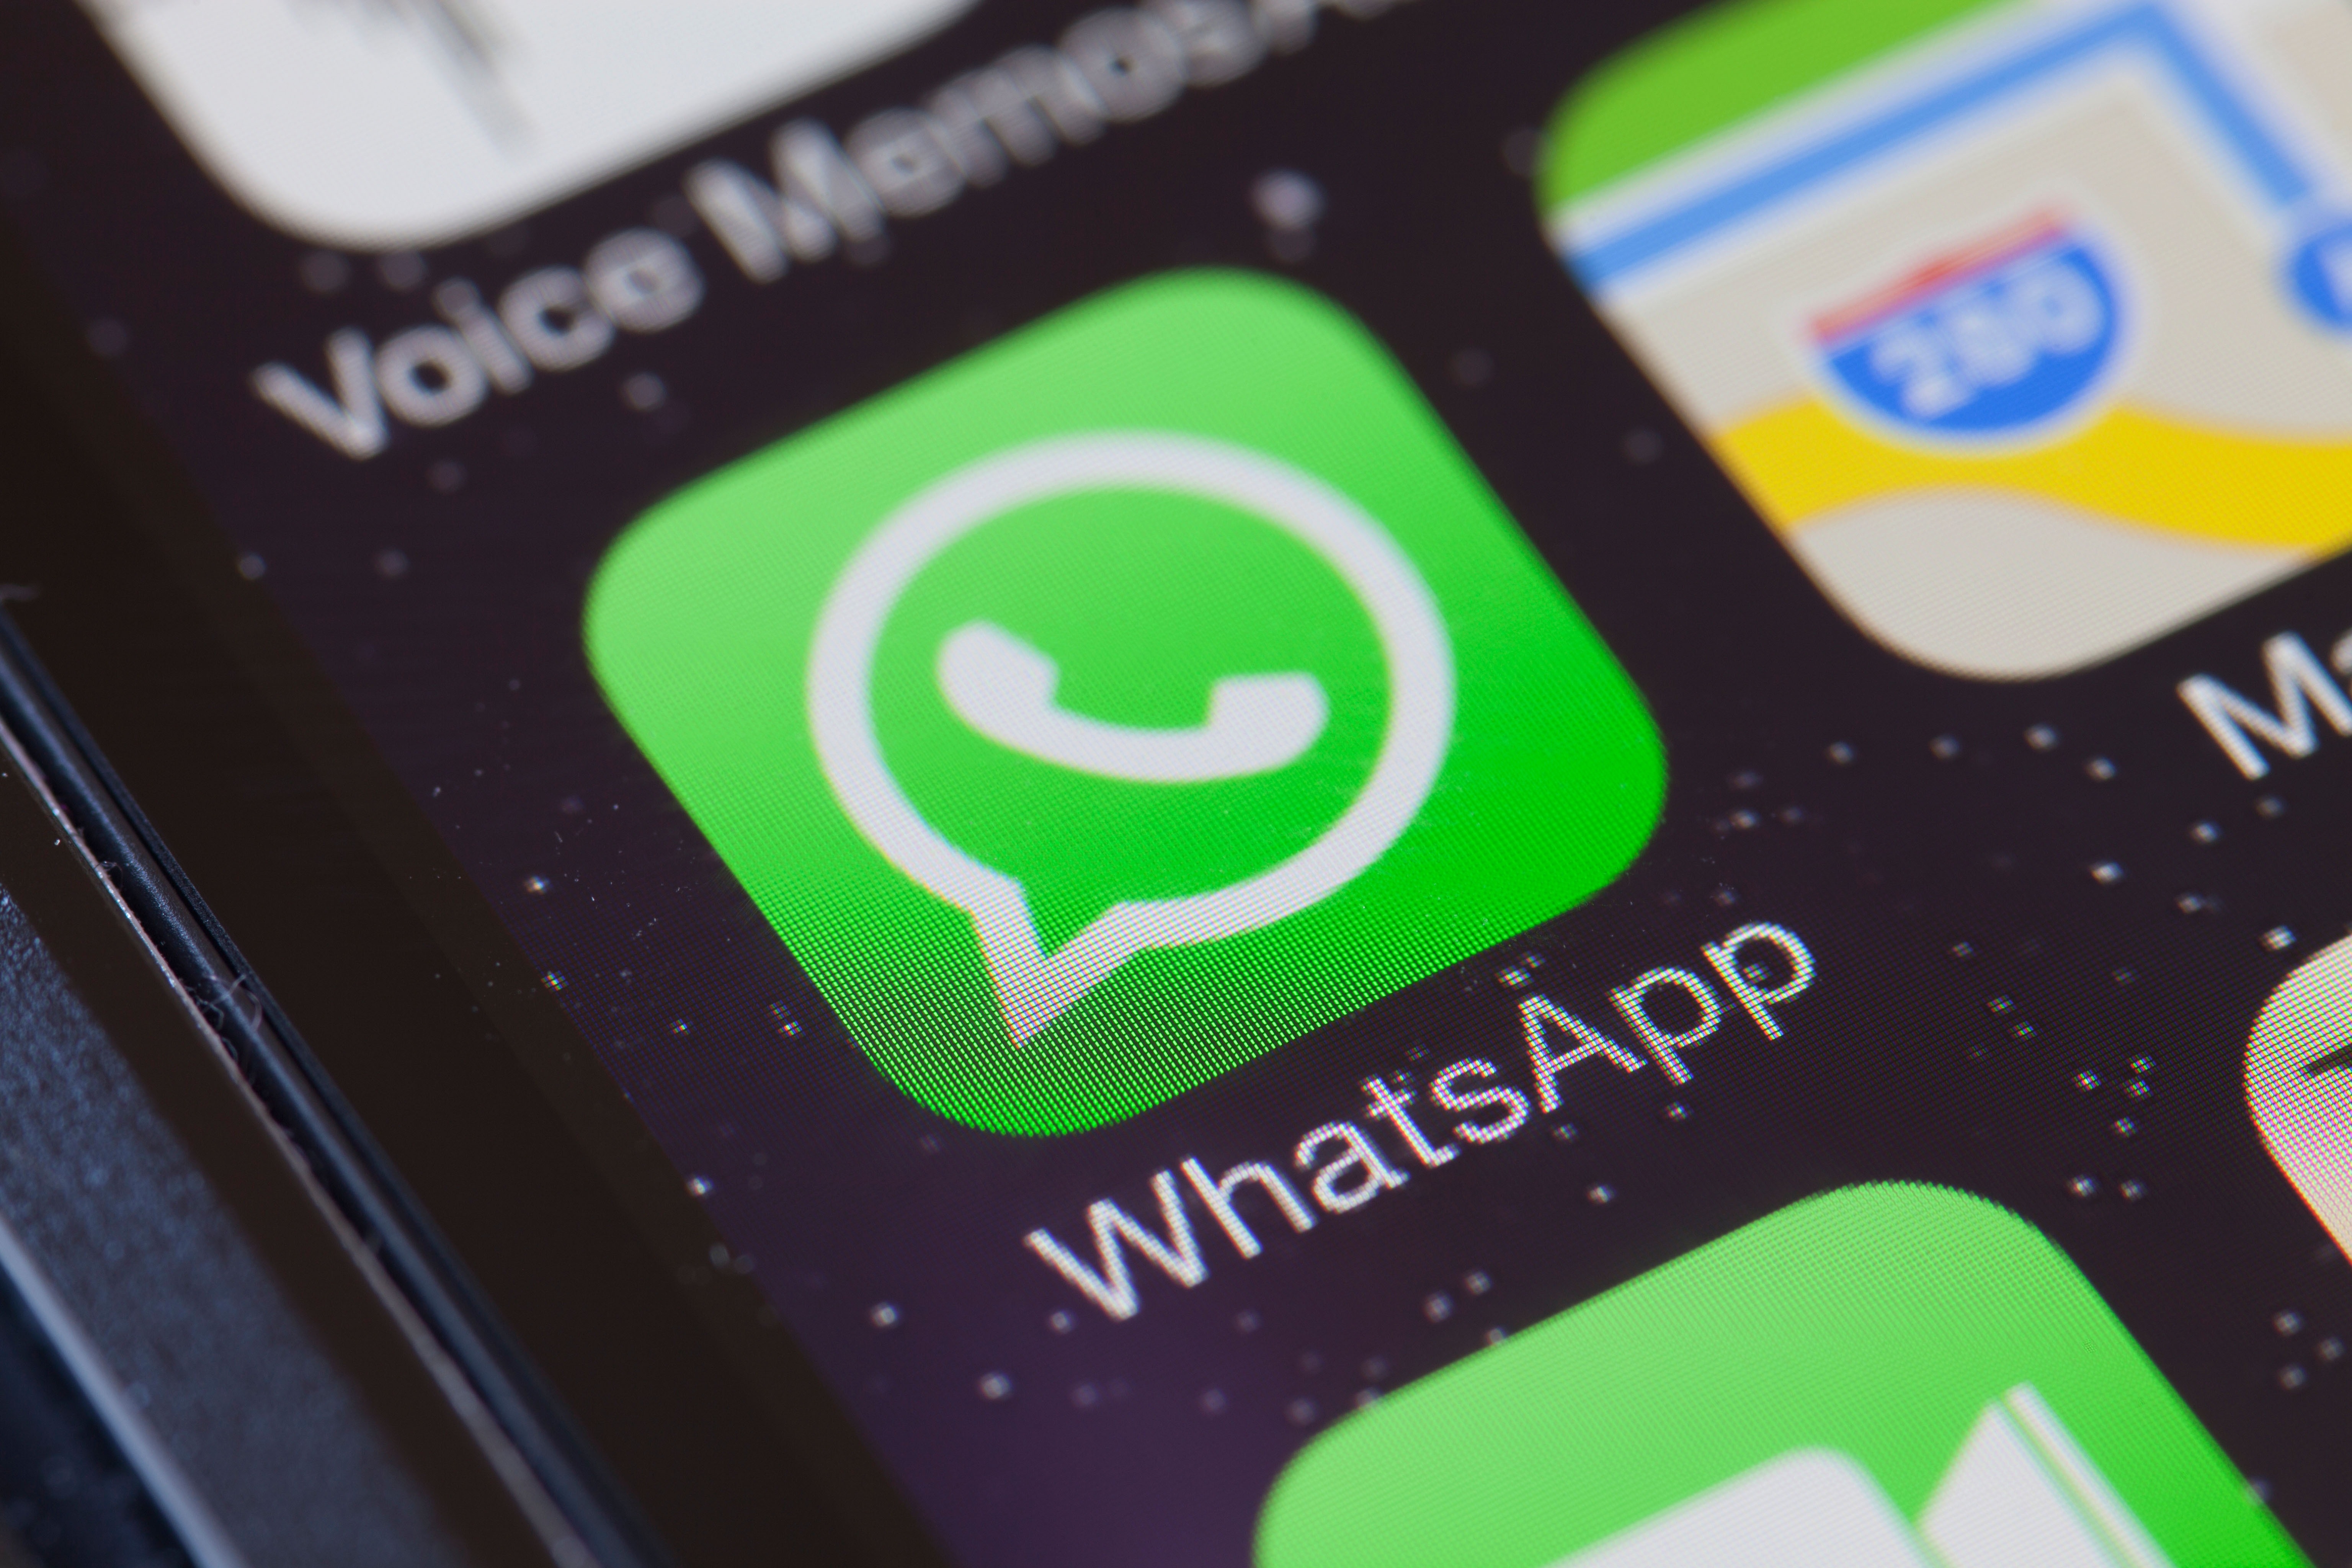 Пользователи из России пожаловались на сбои работе Telegram, WhatsApp и Viber